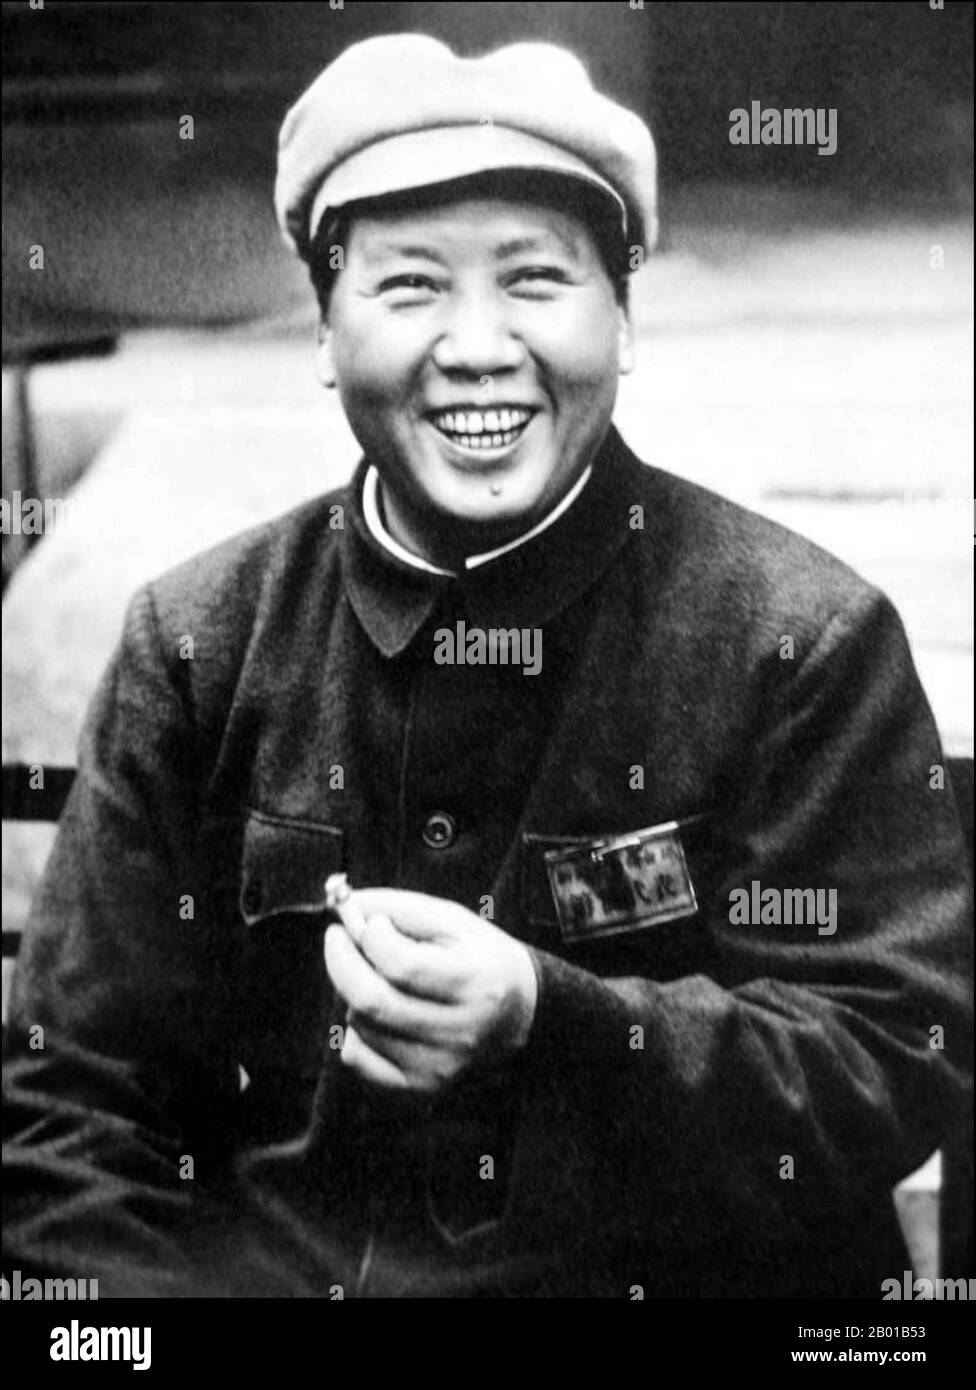 China: Mao Zedong (26. Dezember 1893 - 9. September 1976) Vorsitzender der Volksrepublik China, c. 1935-1940. Mao Zedong, auch als Mao Tse-tung transliteriert, war ein chinesischer kommunistischer Revolutionär, Guerilla-Kriegsstratege, Autor, politischer Theoretiker und Führer der chinesischen Revolution. Allgemein als Vorsitzender Mao bezeichnet, war er seit seiner Gründung im Jahr 1949 der Architekt der Volksrepublik China (PRC) und hatte bis zu seinem Tod im Jahr 1976 die autoritäre Kontrolle über die Nation. Sein theoretischer Beitrag zum Marxismus-Leninismus wird kollektiv als Maoismus bezeichnet. Stockfoto